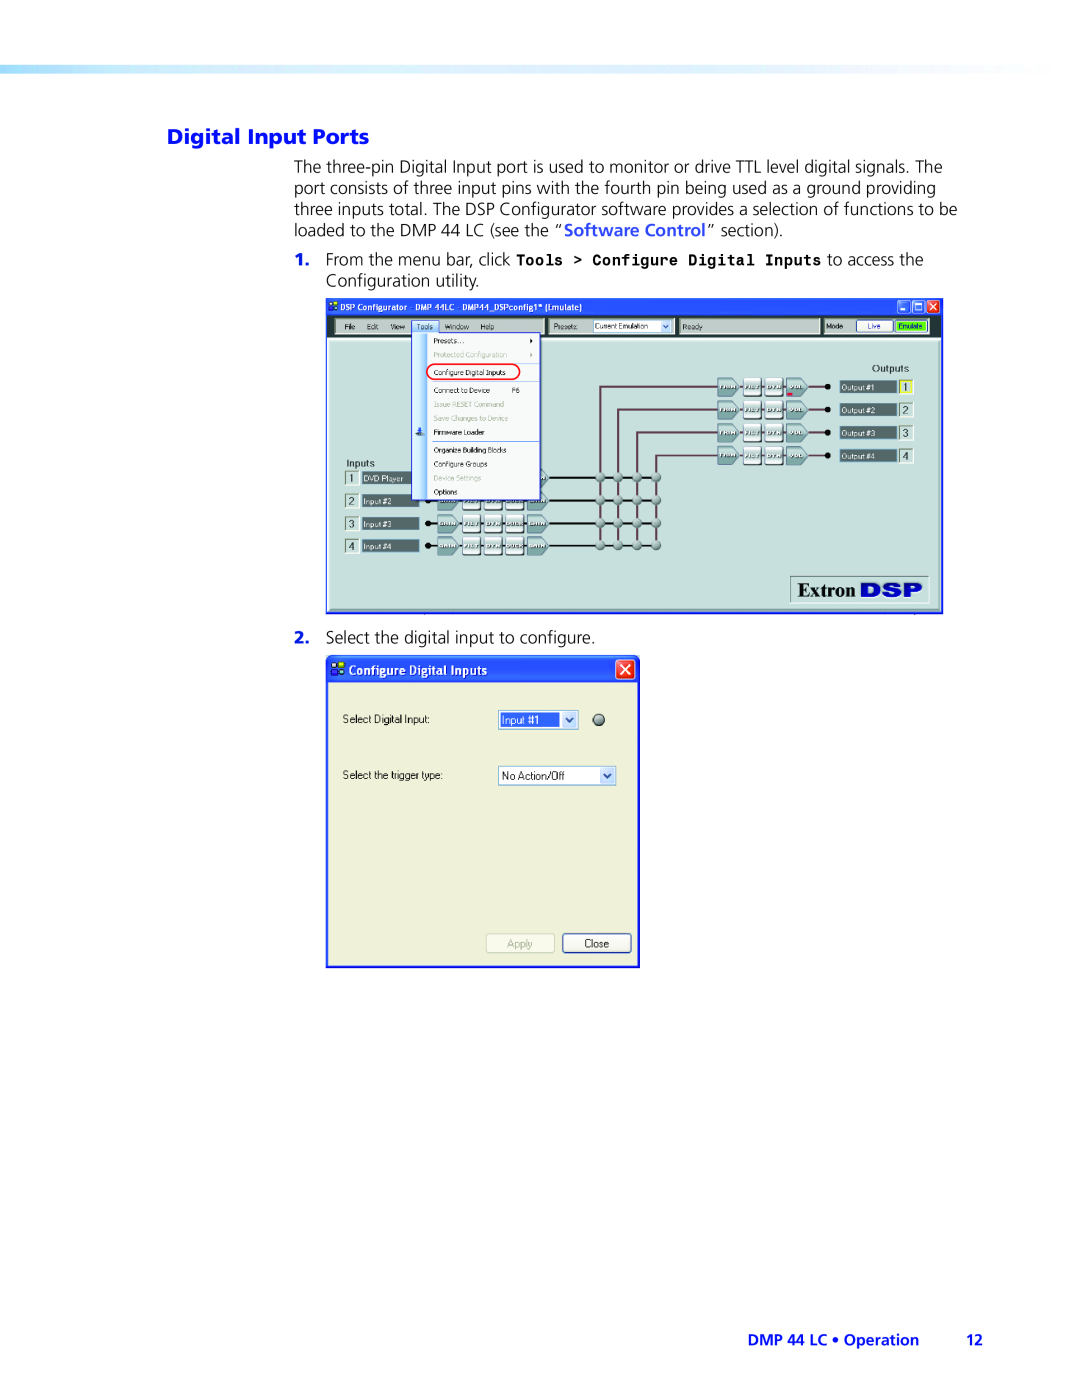 Extron electronic DMP 44 LC manual Digital Input Ports 